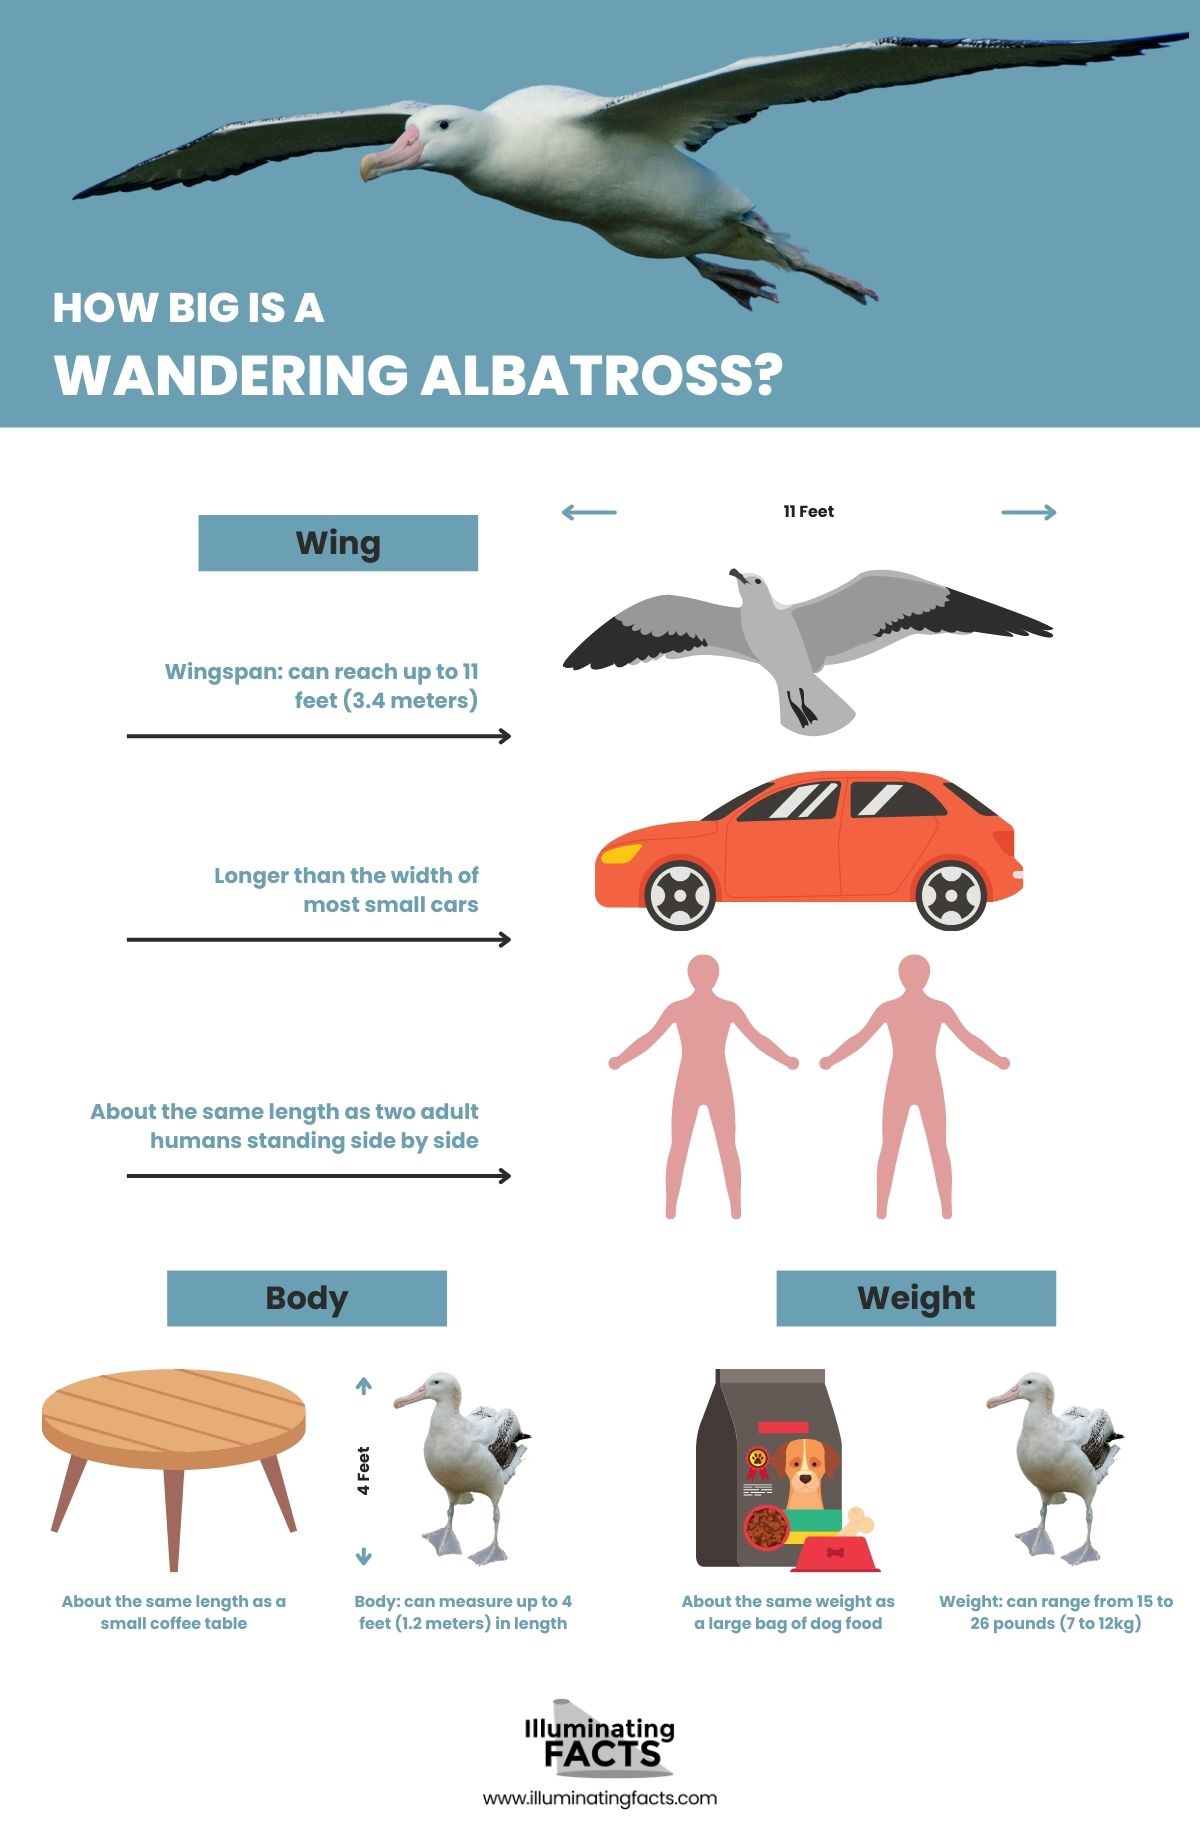 How Big is a Wandering Albatross?